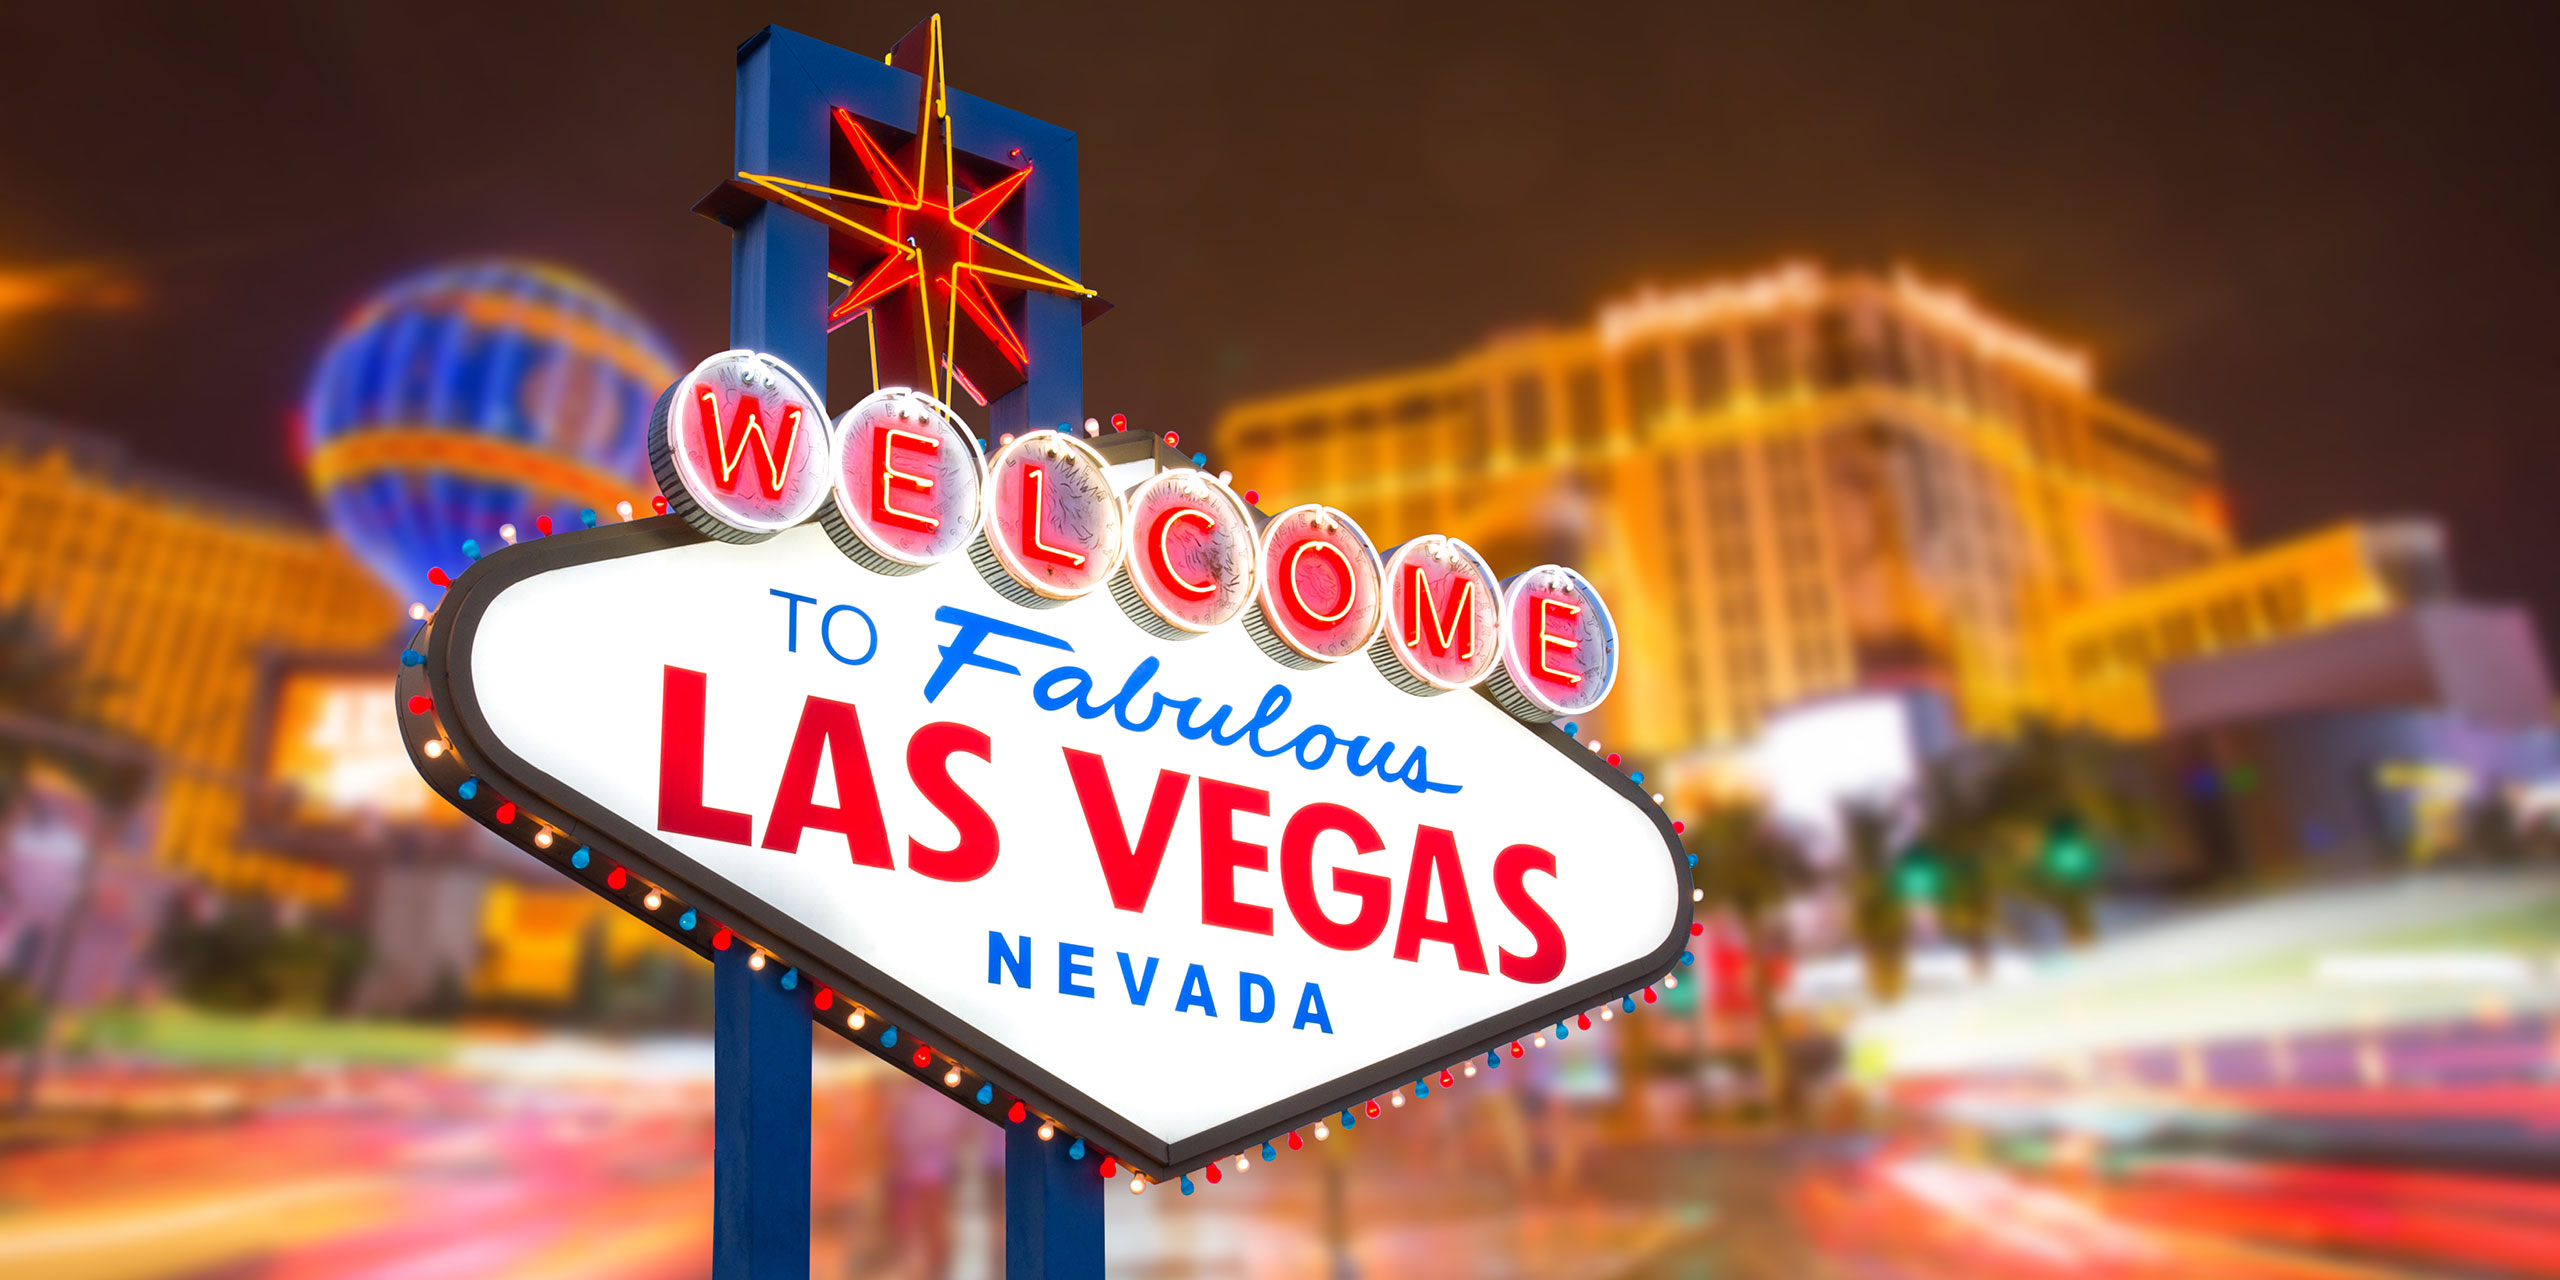 Best 16 Las Vegas Hotels for Kids - HotelsCombined Best 16 Las